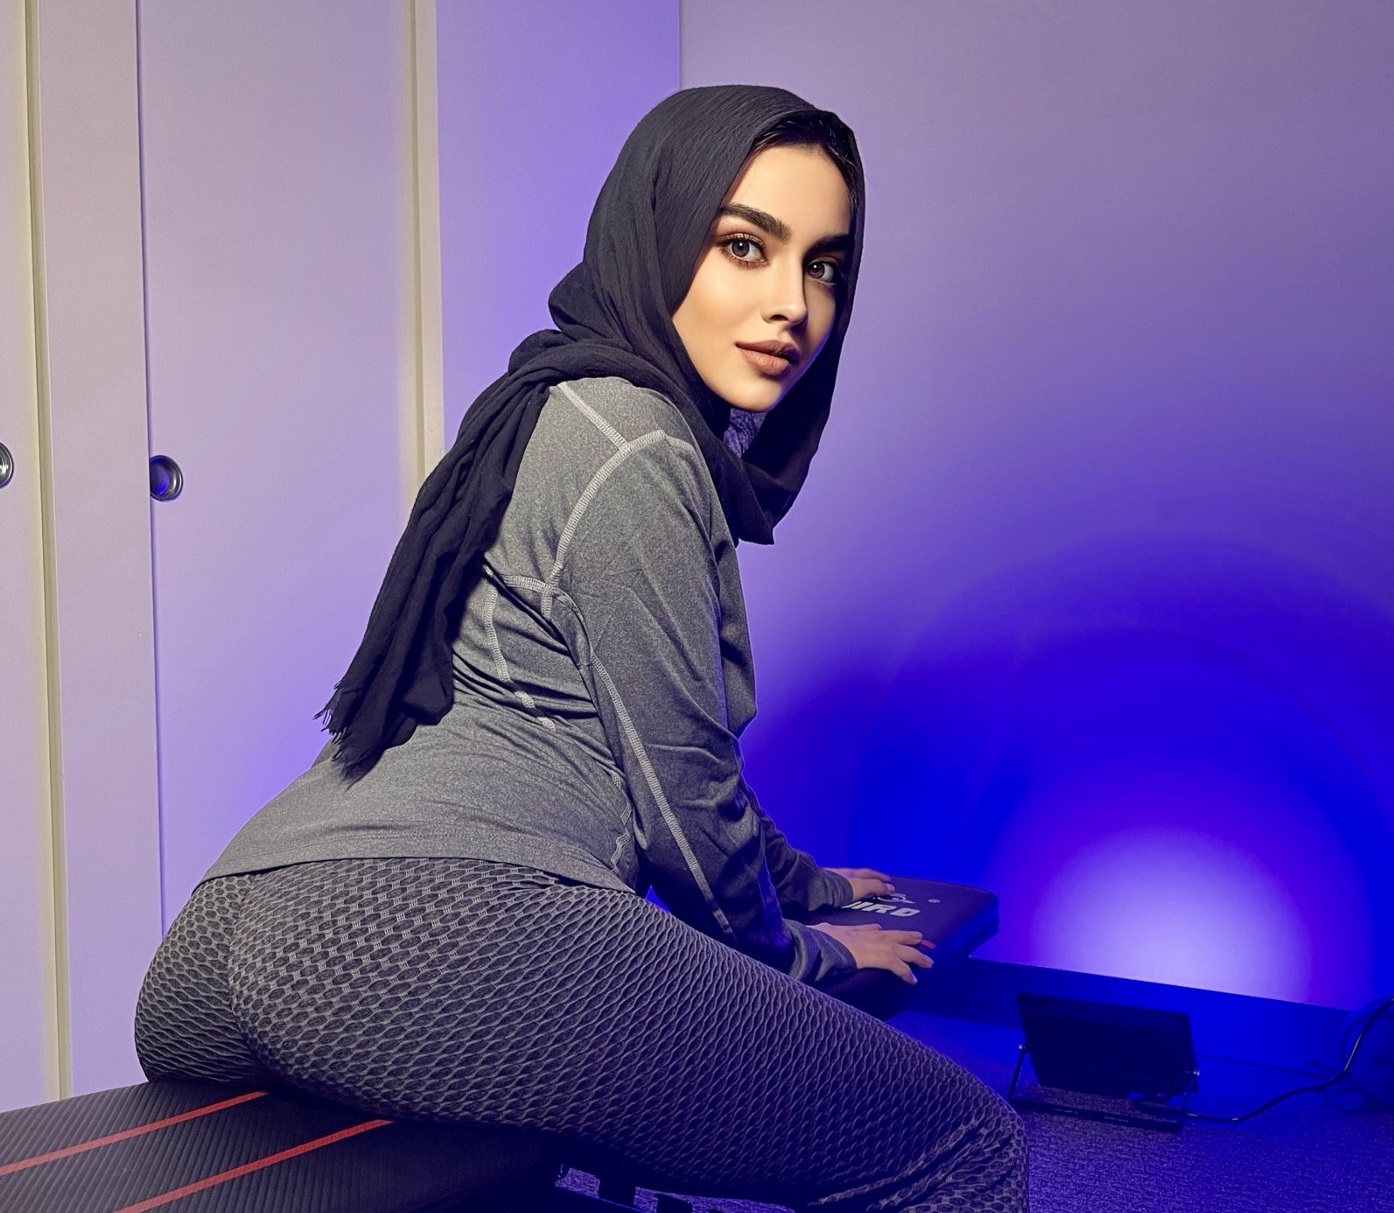 Mariam hadid porn videos